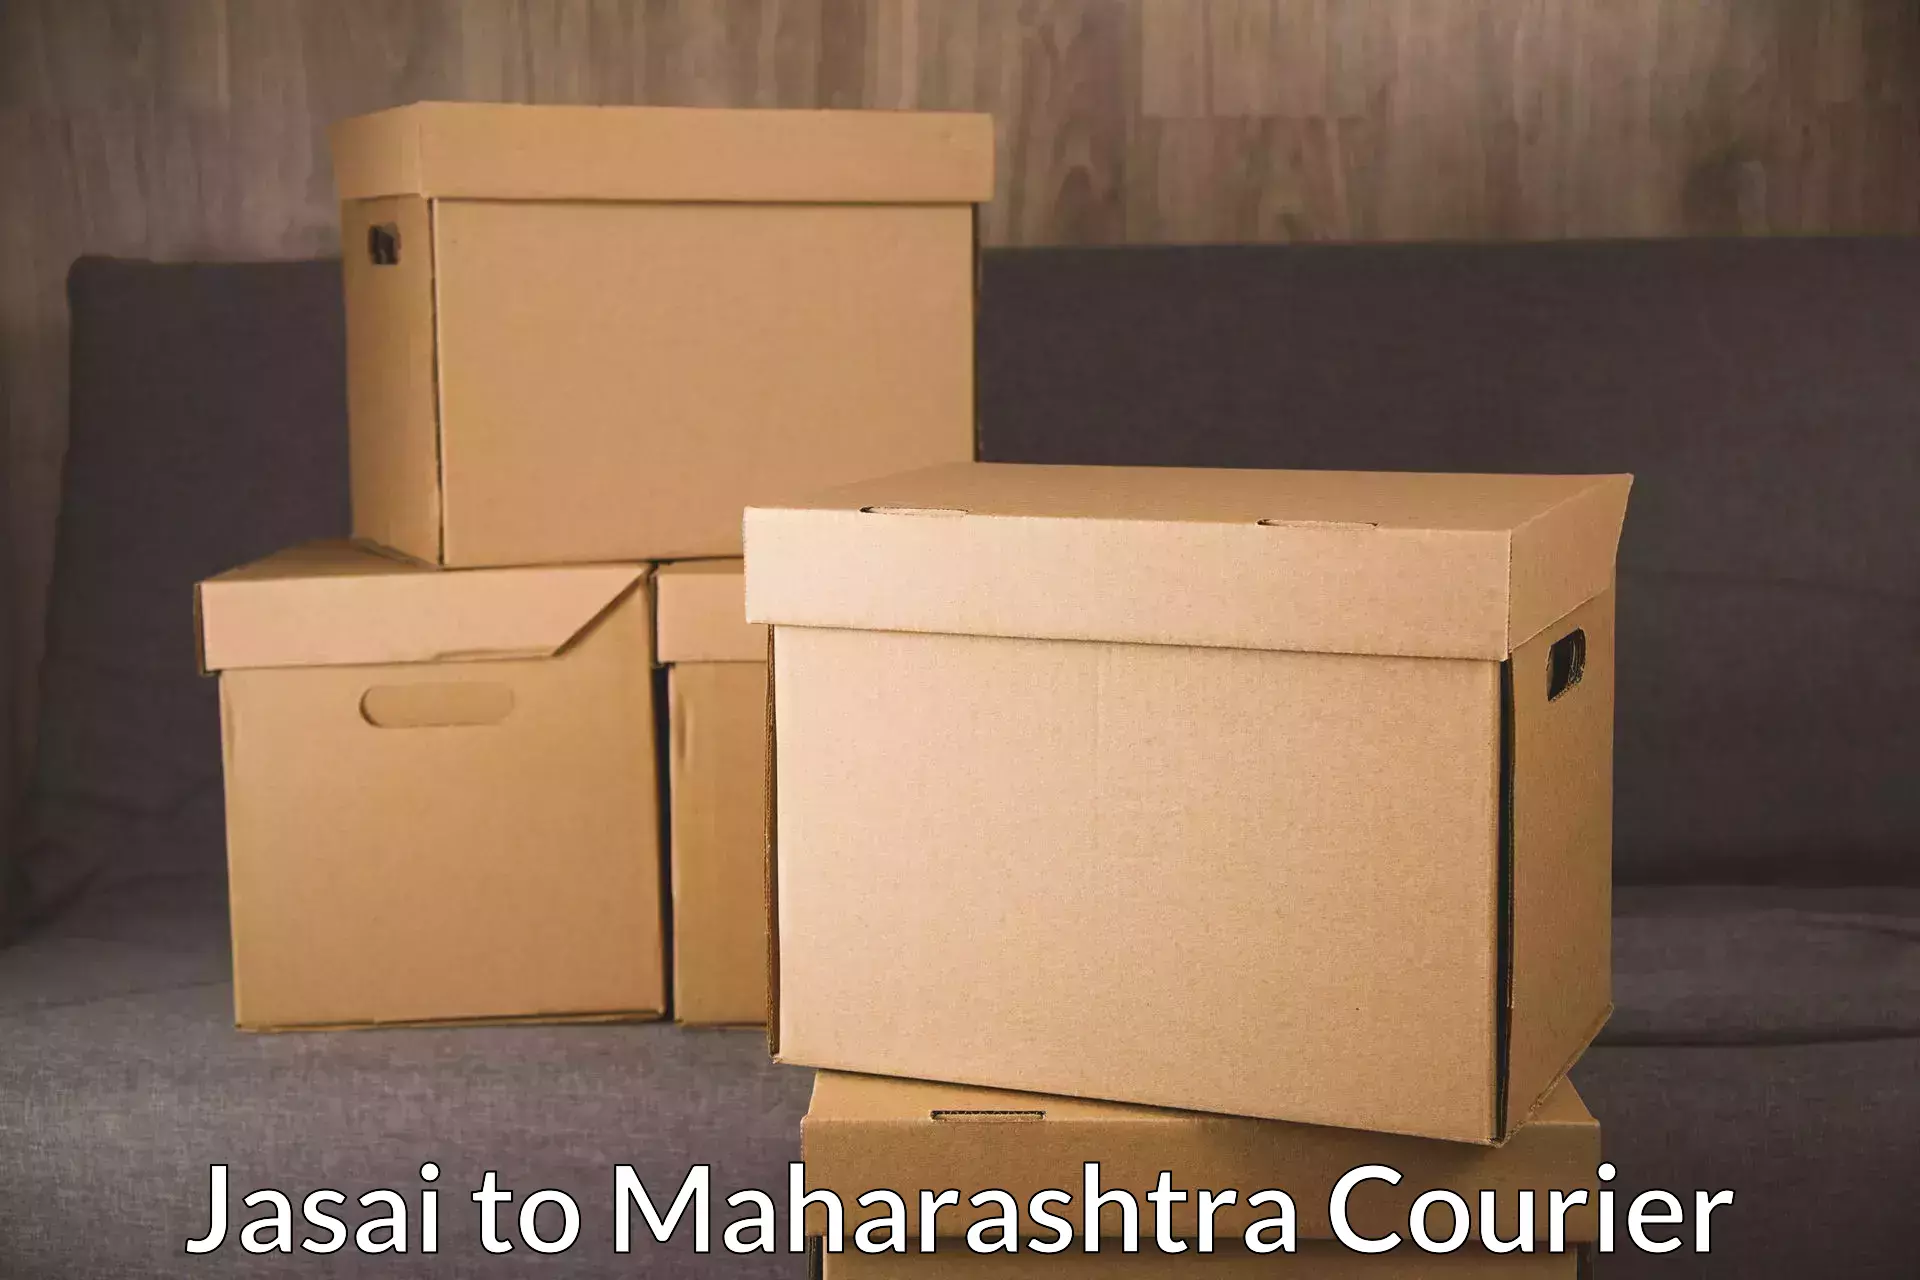 Express mail service Jasai to Maharashtra